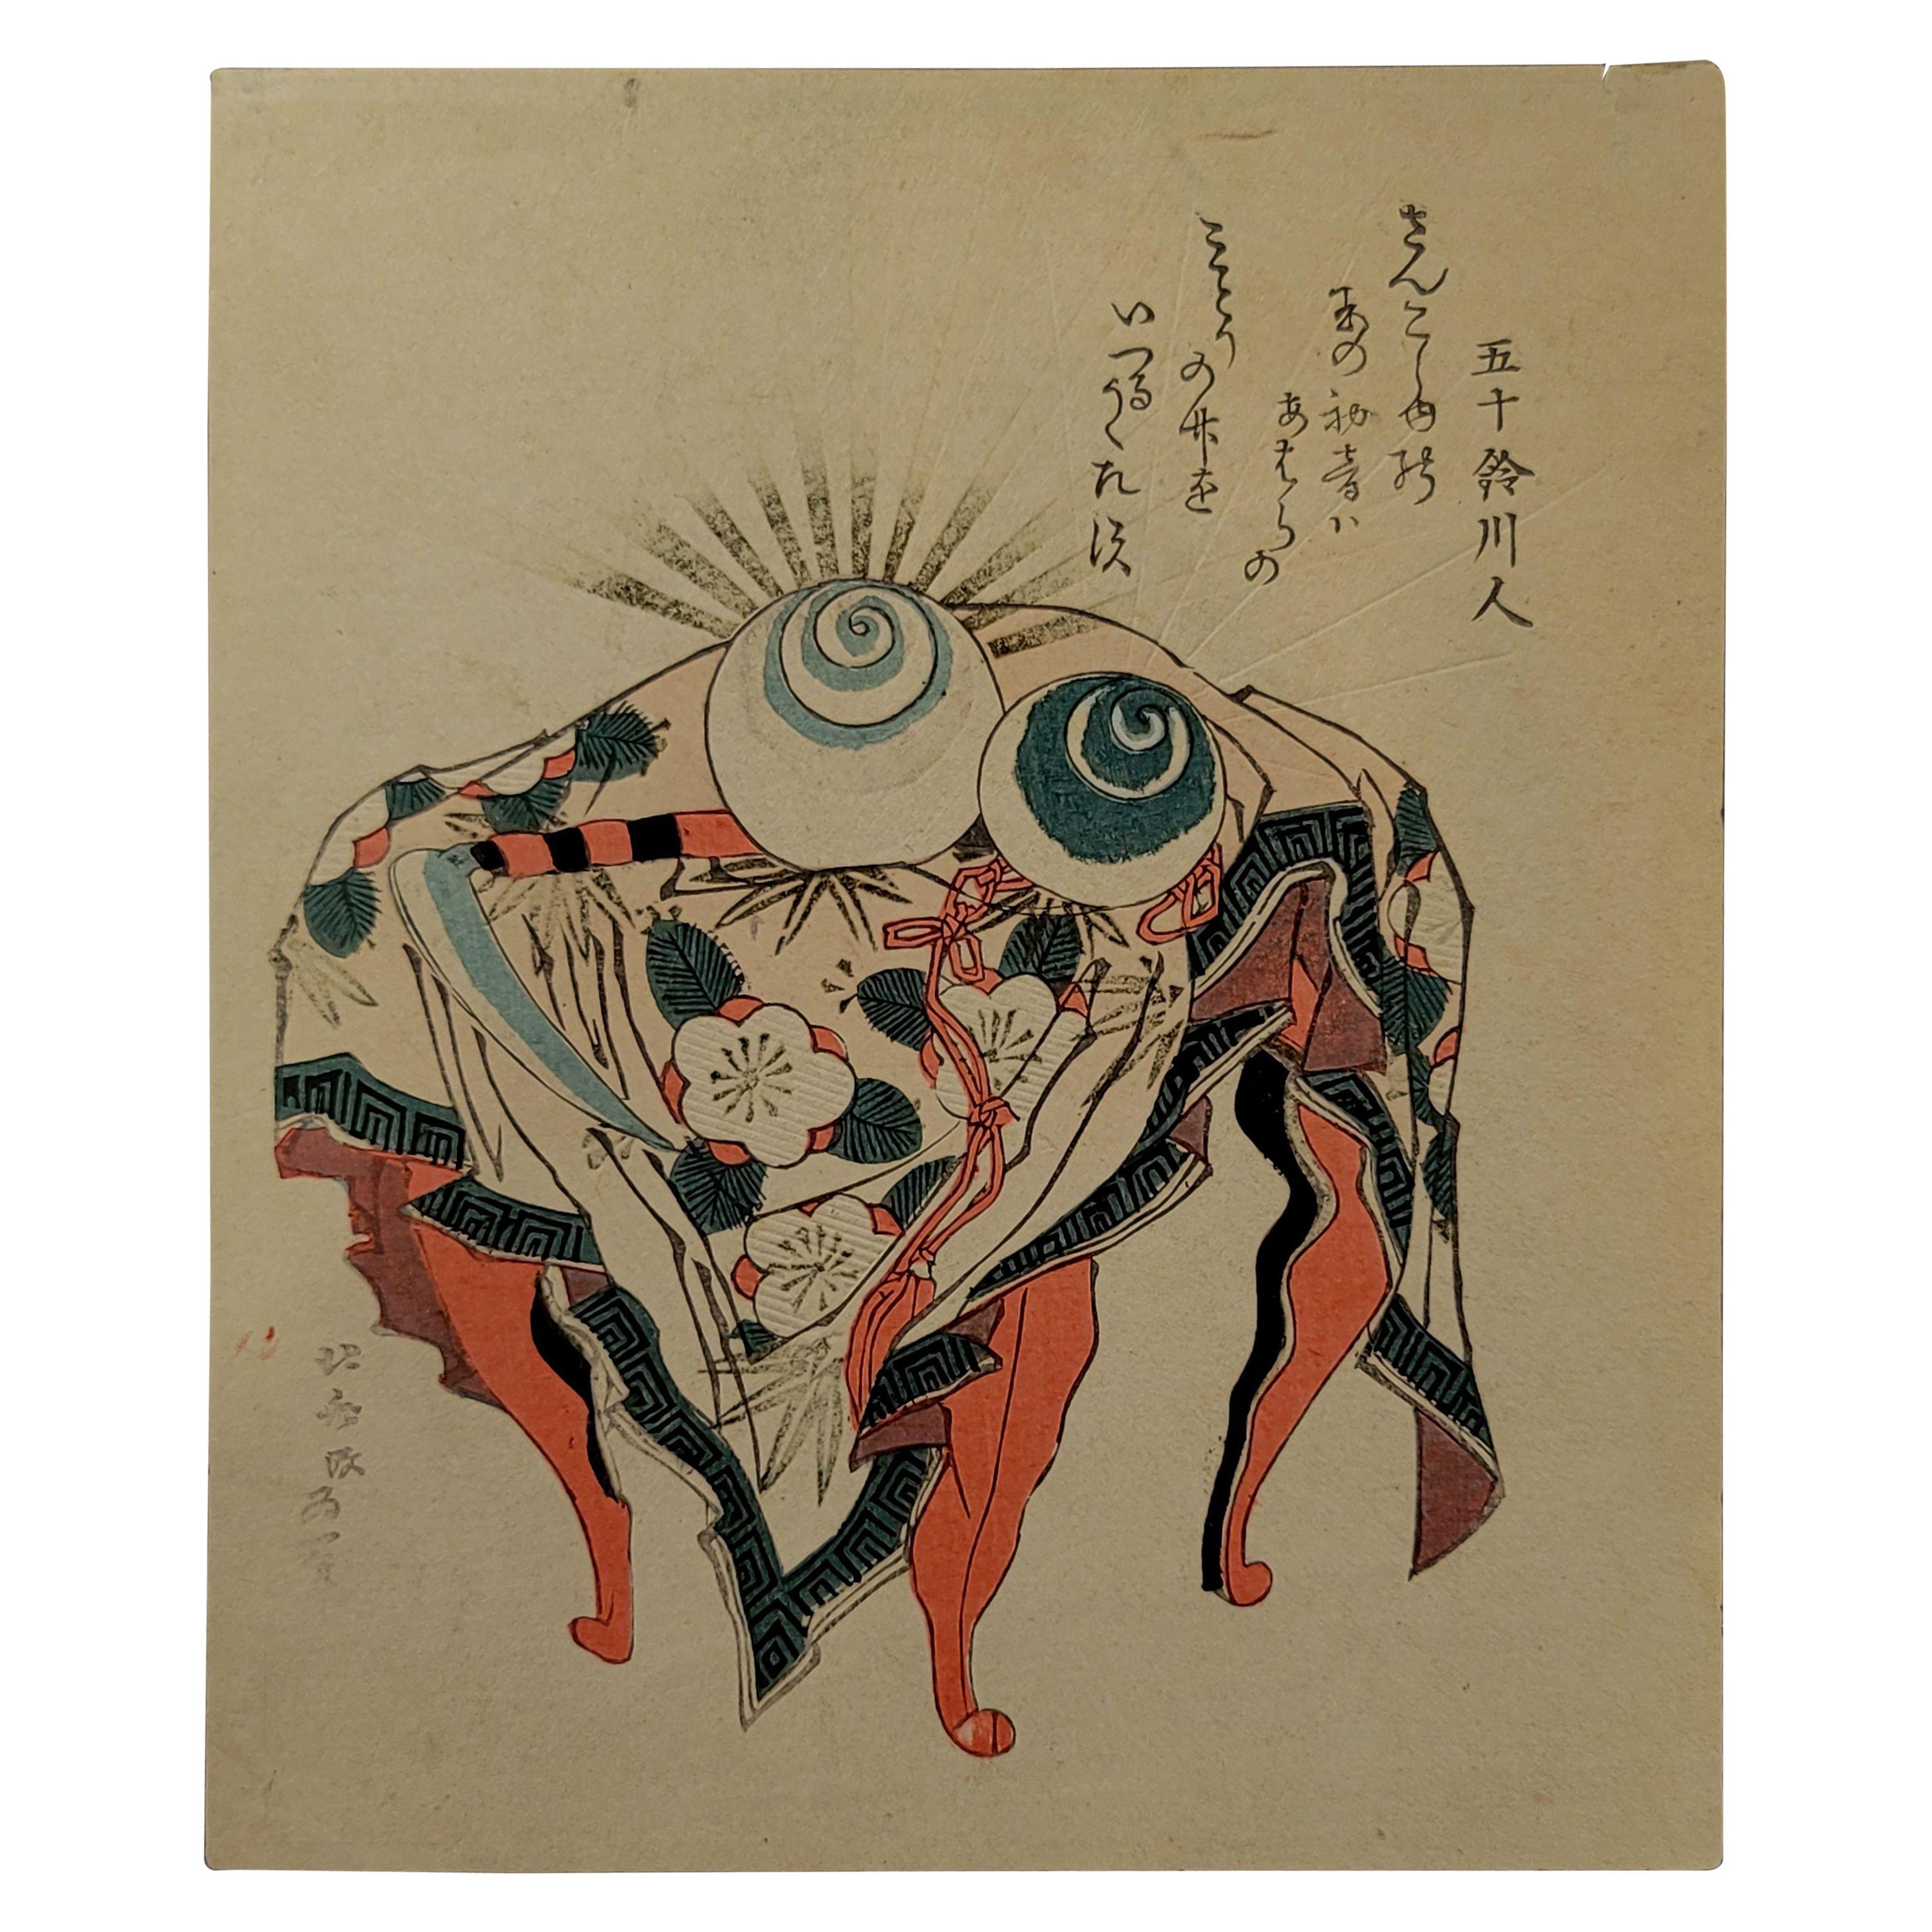 Gravure sur bois japonaise de Hokusai Katsushika, 葛飾北齋 (1760~1849)